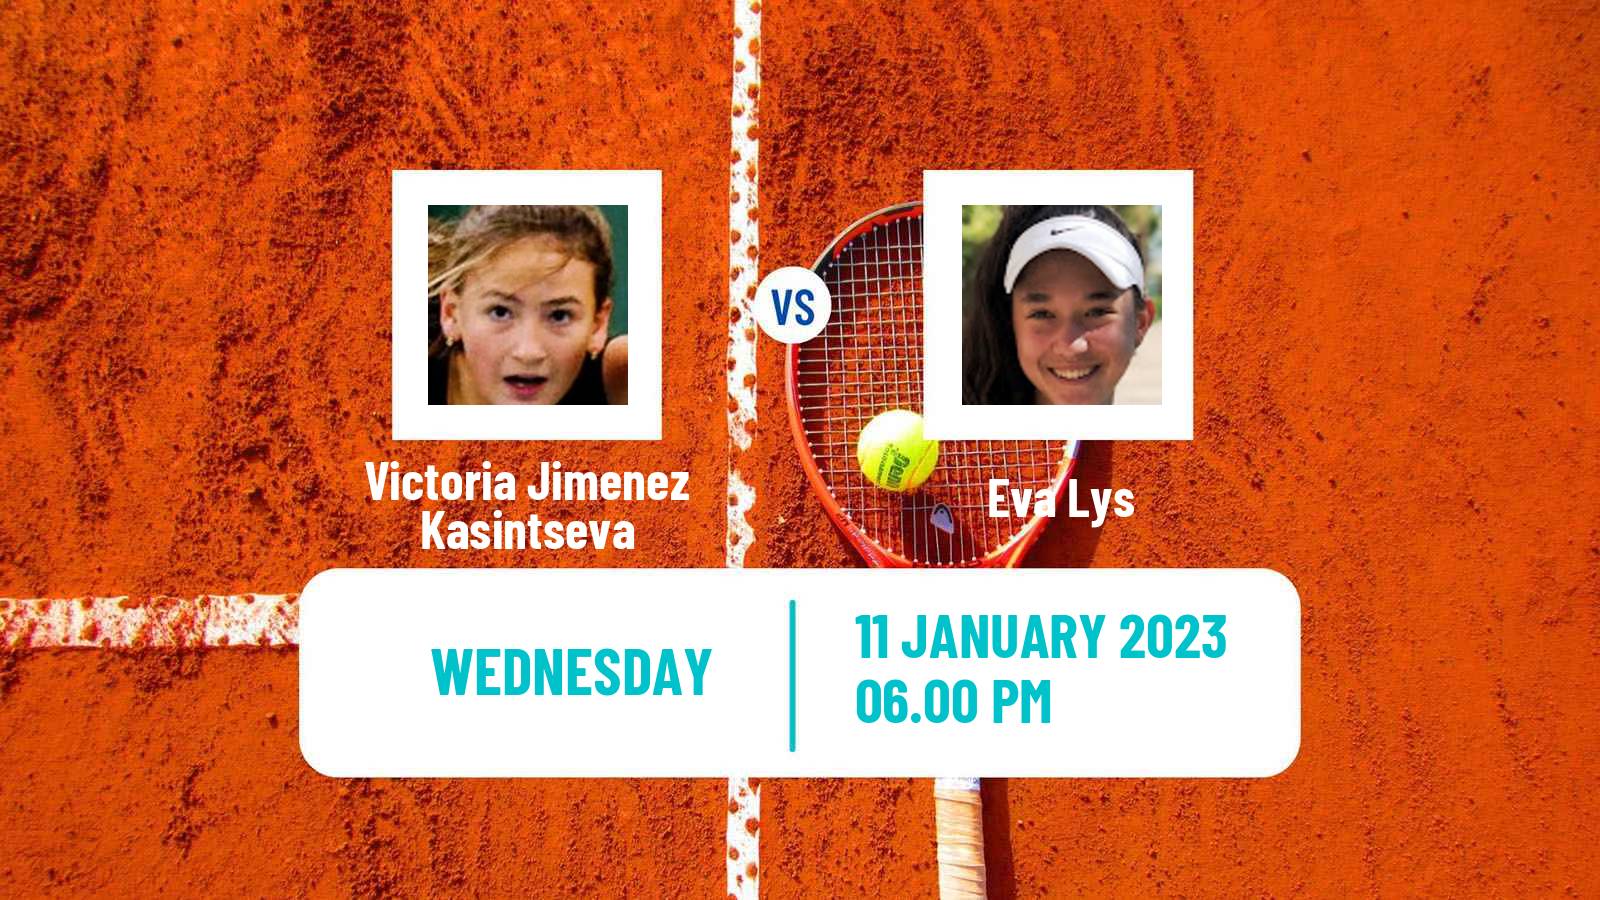 Tennis WTA Australian Open Victoria Jimenez Kasintseva - Eva Lys